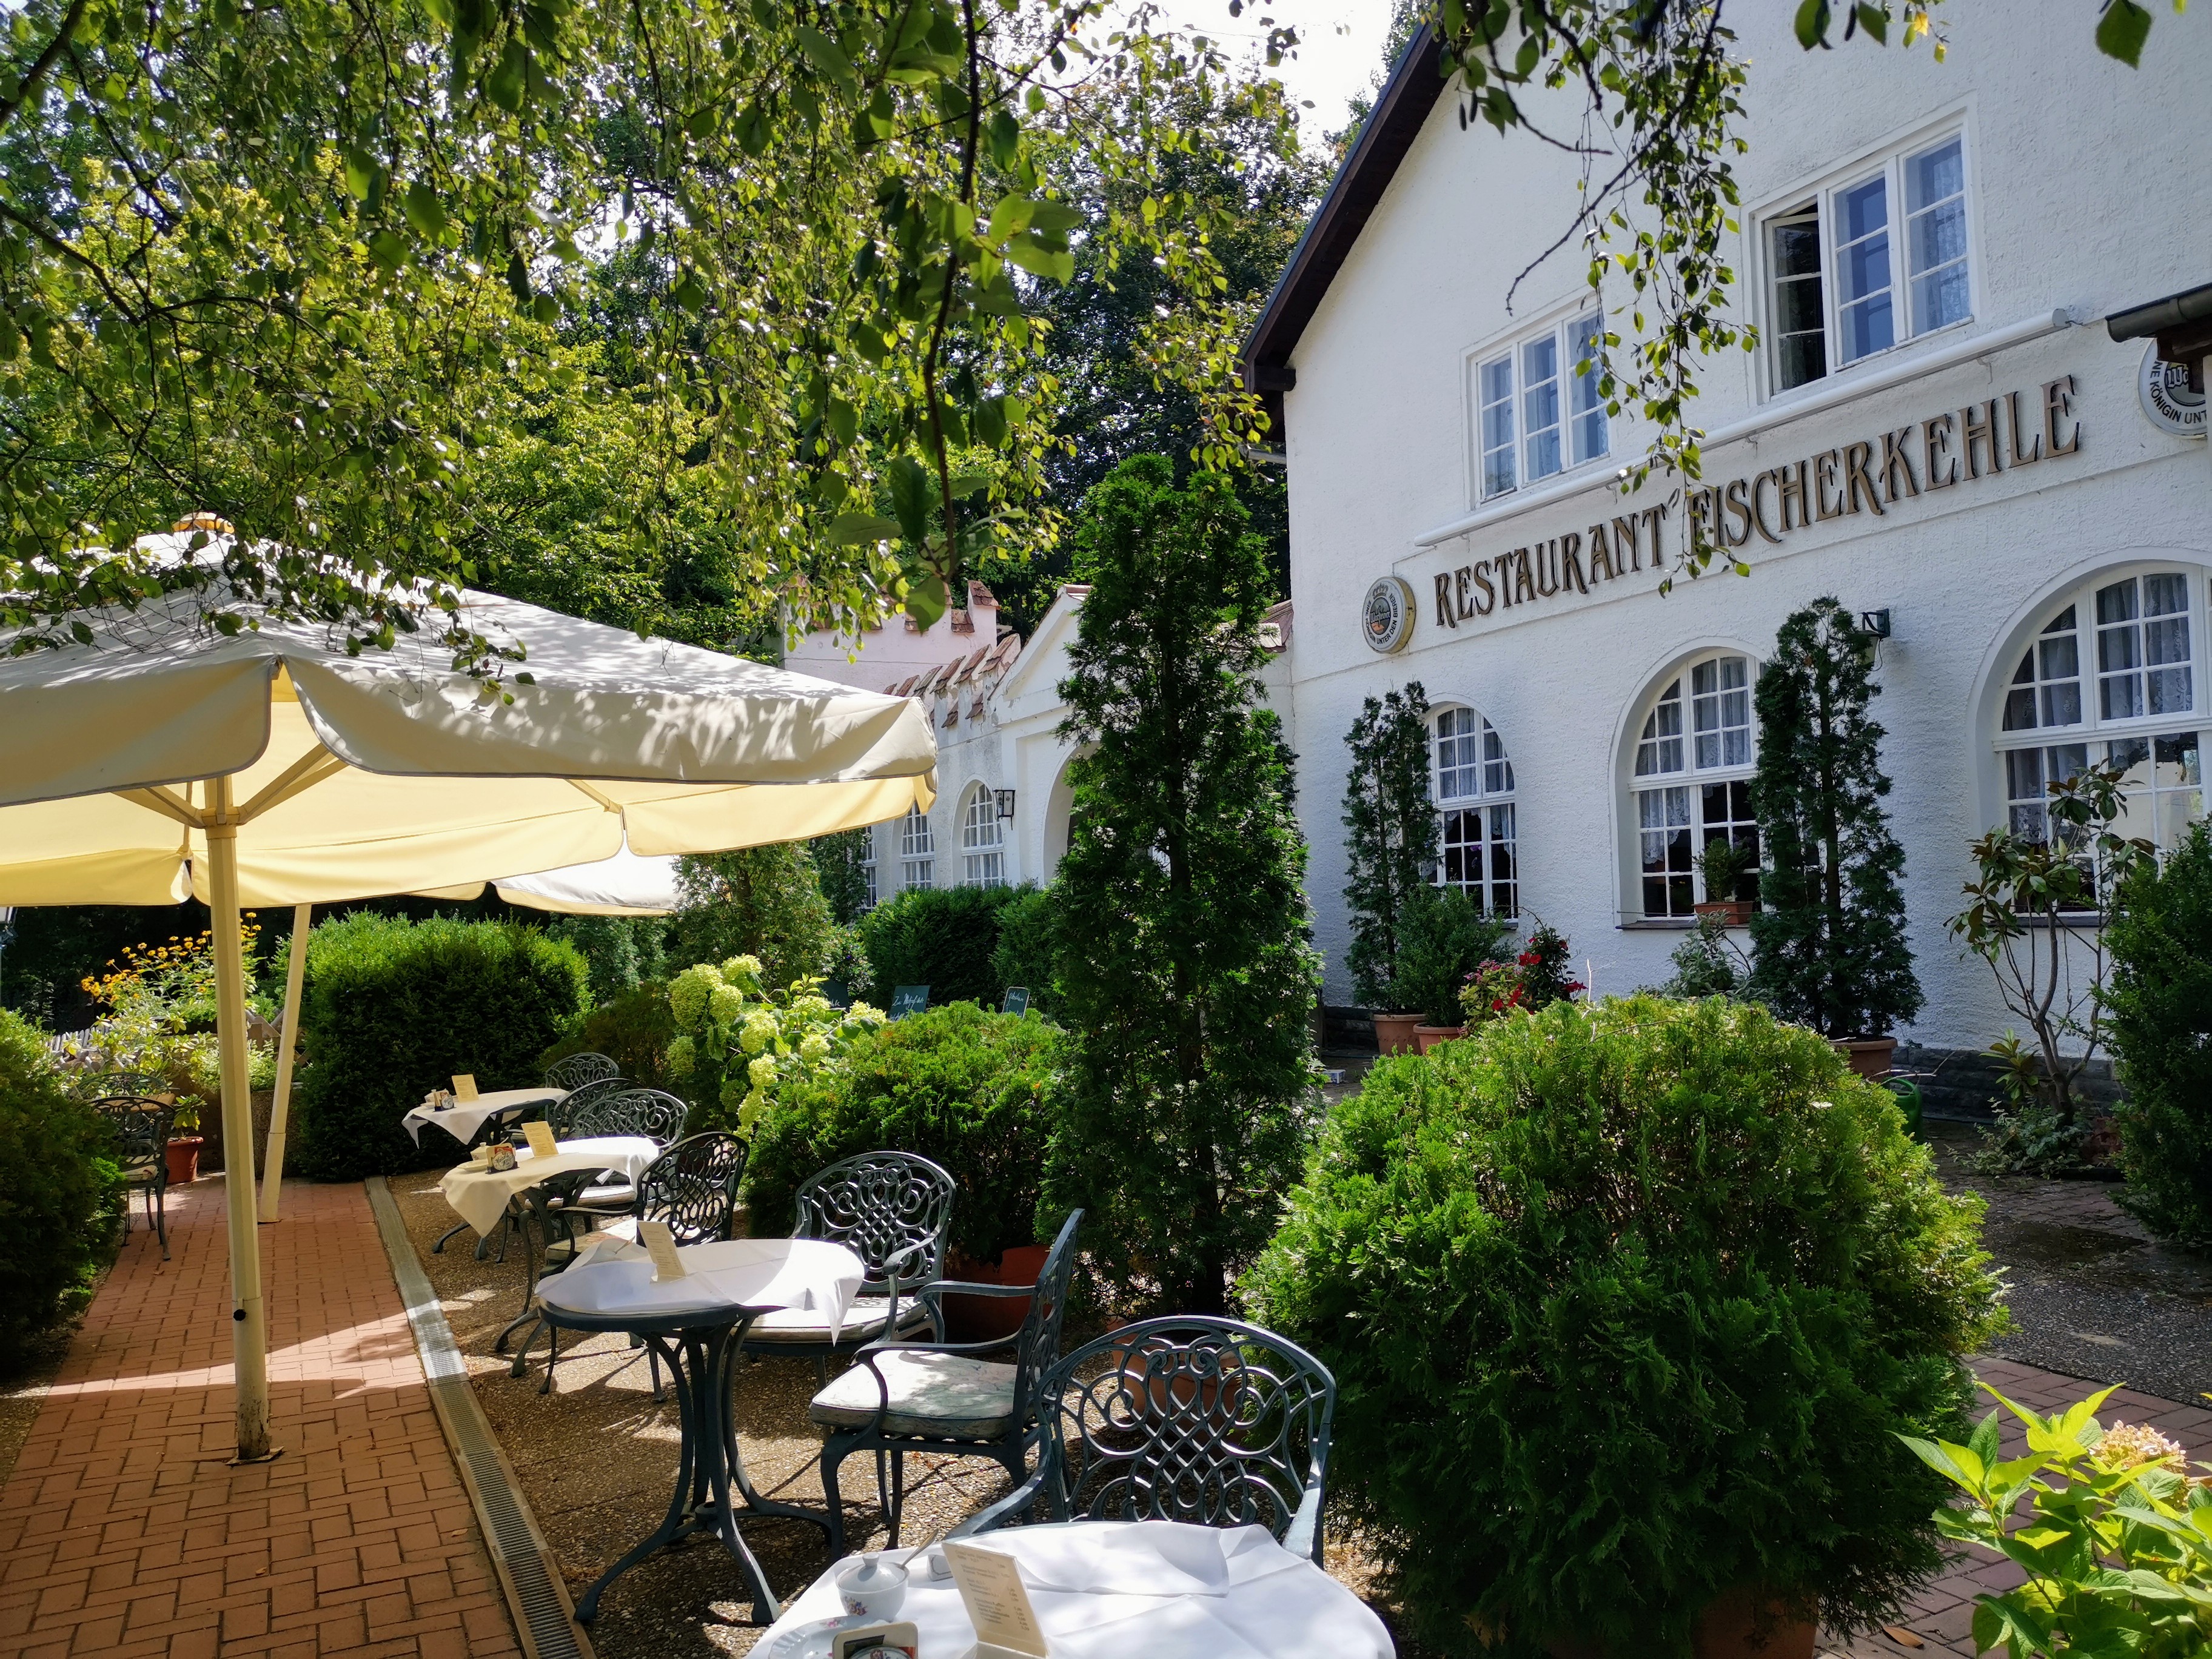 Bild 2 Restaurant Fischerkehle in Buckow (Märkische Schweiz)